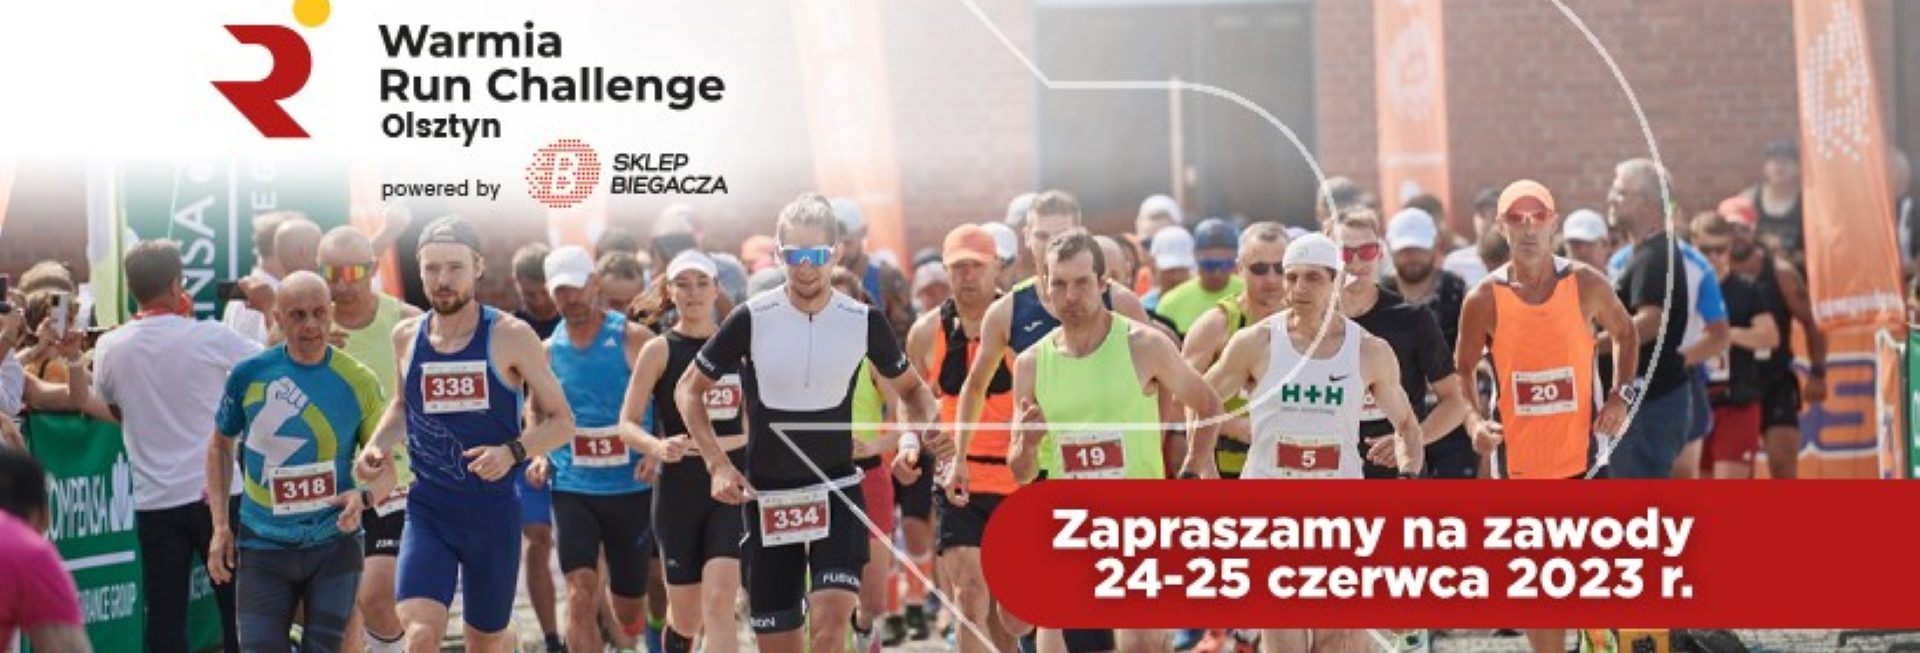 Plakat zapraszający w dniach 24-25 czerwca 2023 r. do Olsztyna na Festiwal Biegowy w Olsztynie - Warmia Run Challenge Olsztyn 2023.